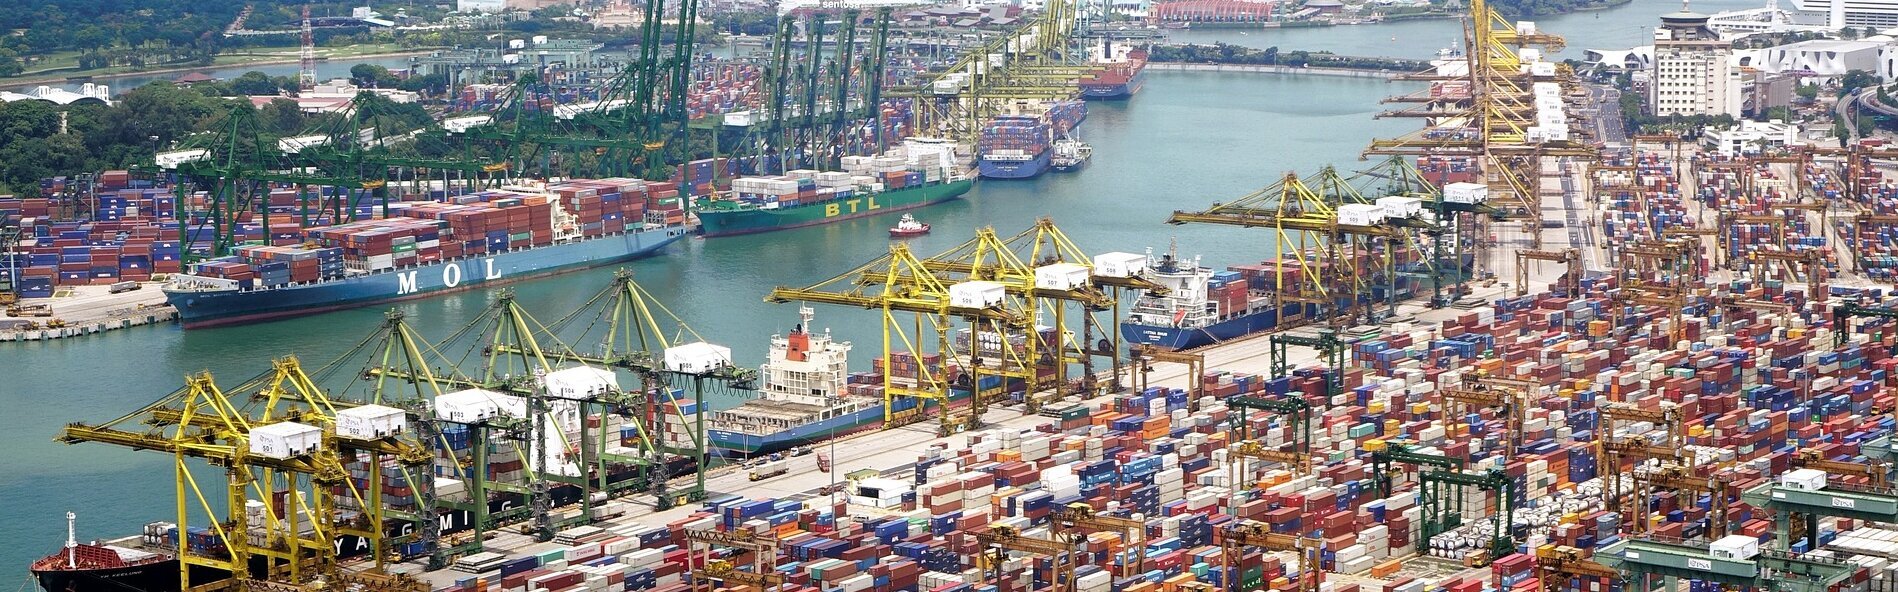 Das Bild zeigt einen Containerhafen.